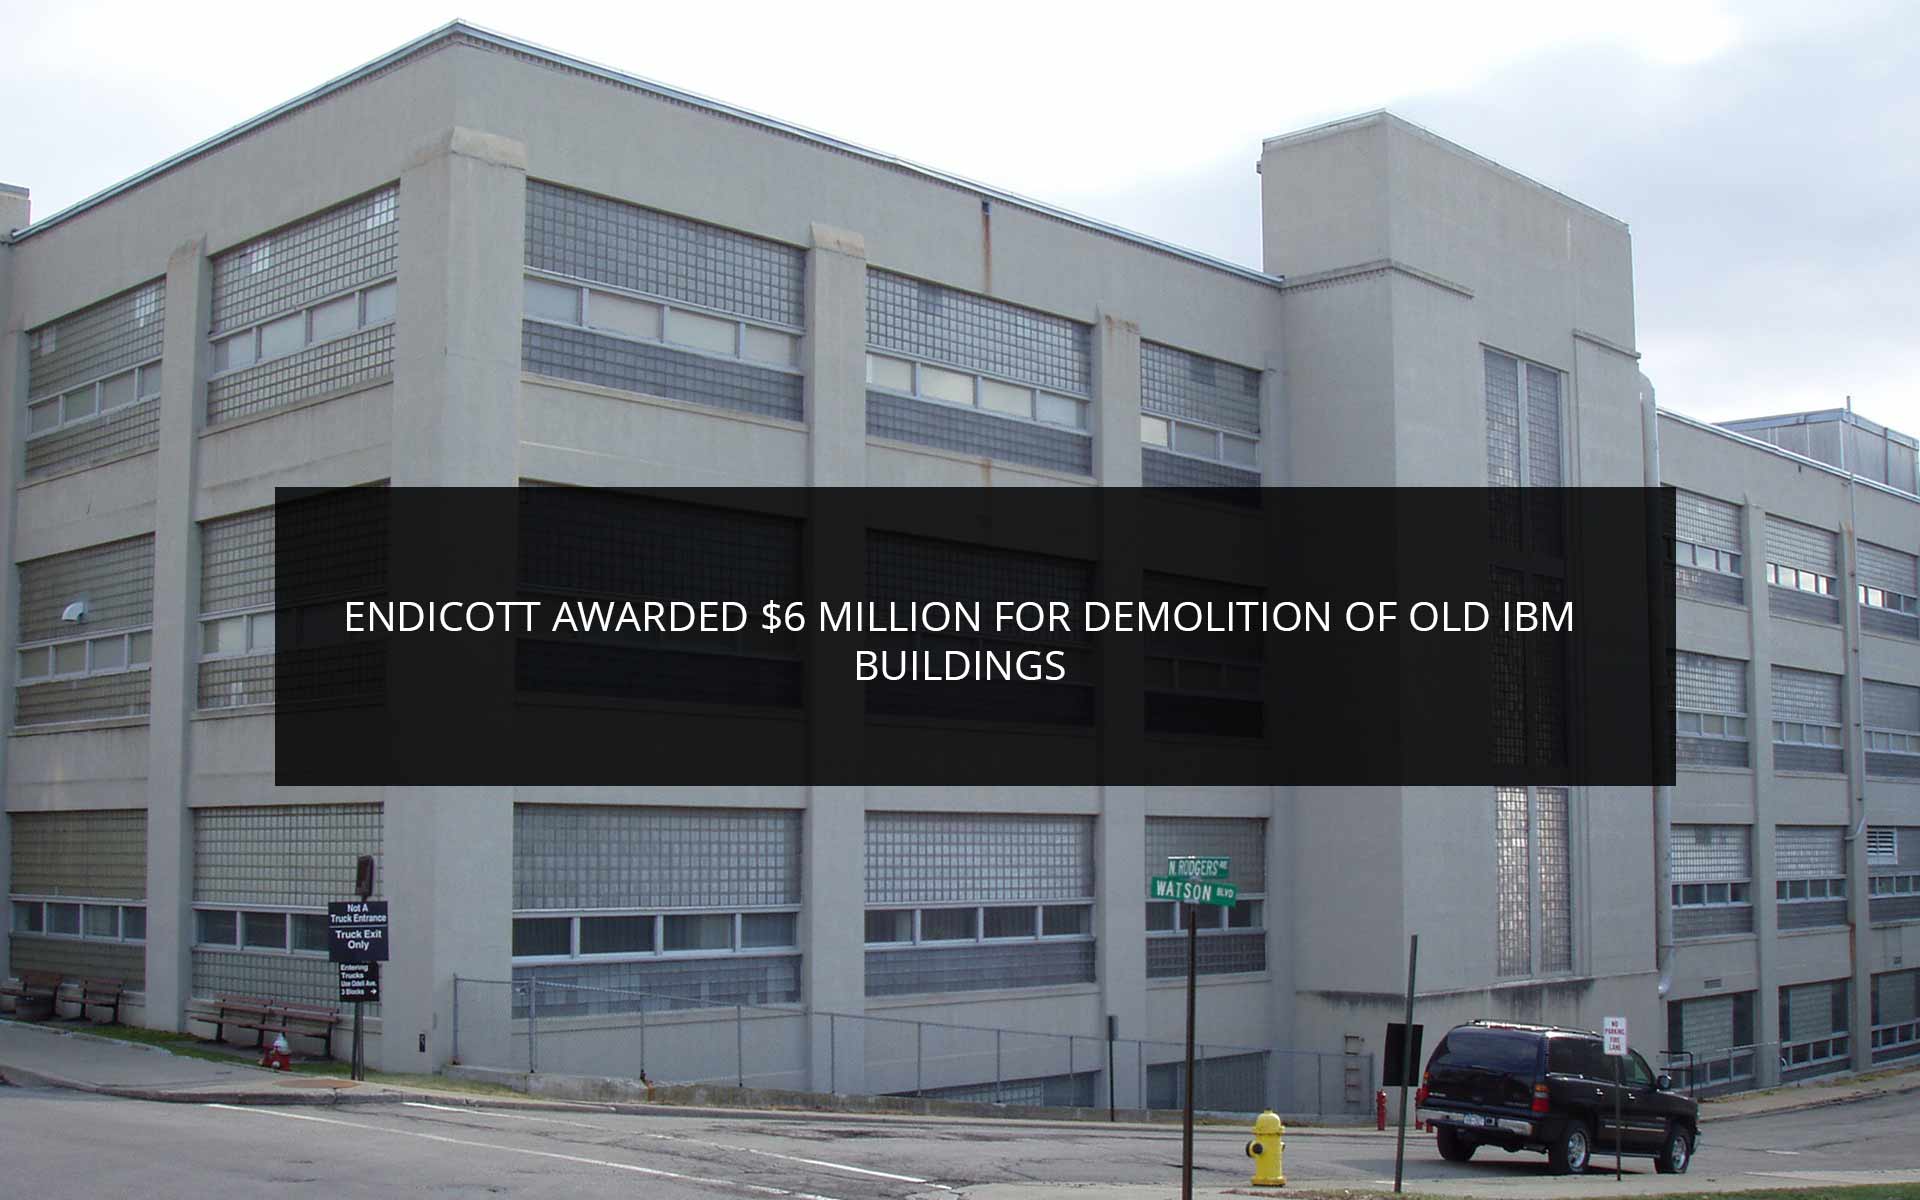 Endicott Awarded $6 Million for Demolition of Old IBM Buildings